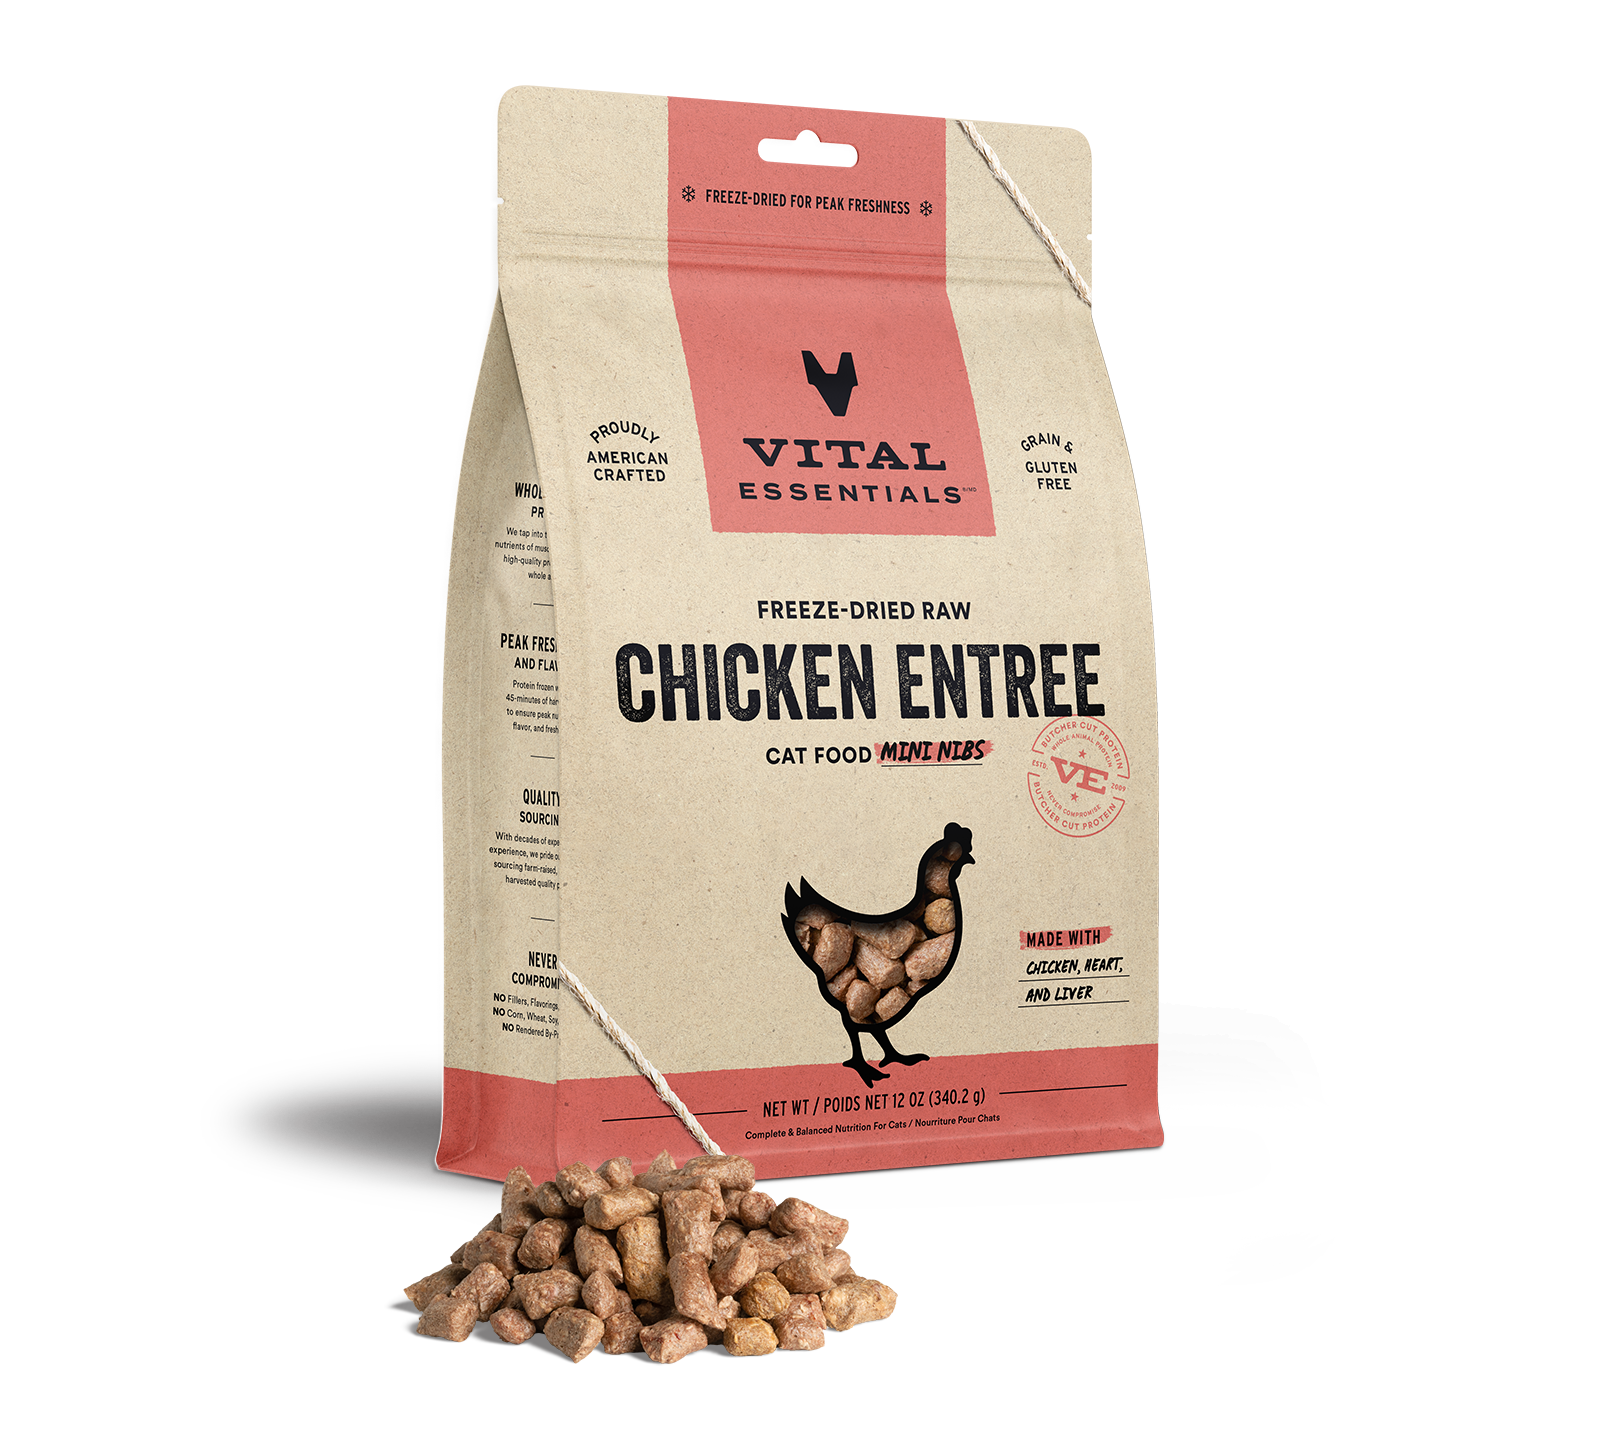 Vital Essentials Freeze-Dried Raw Chicken Entree Cat Food Mini Nibs, 12 oz - Healing/First Aid